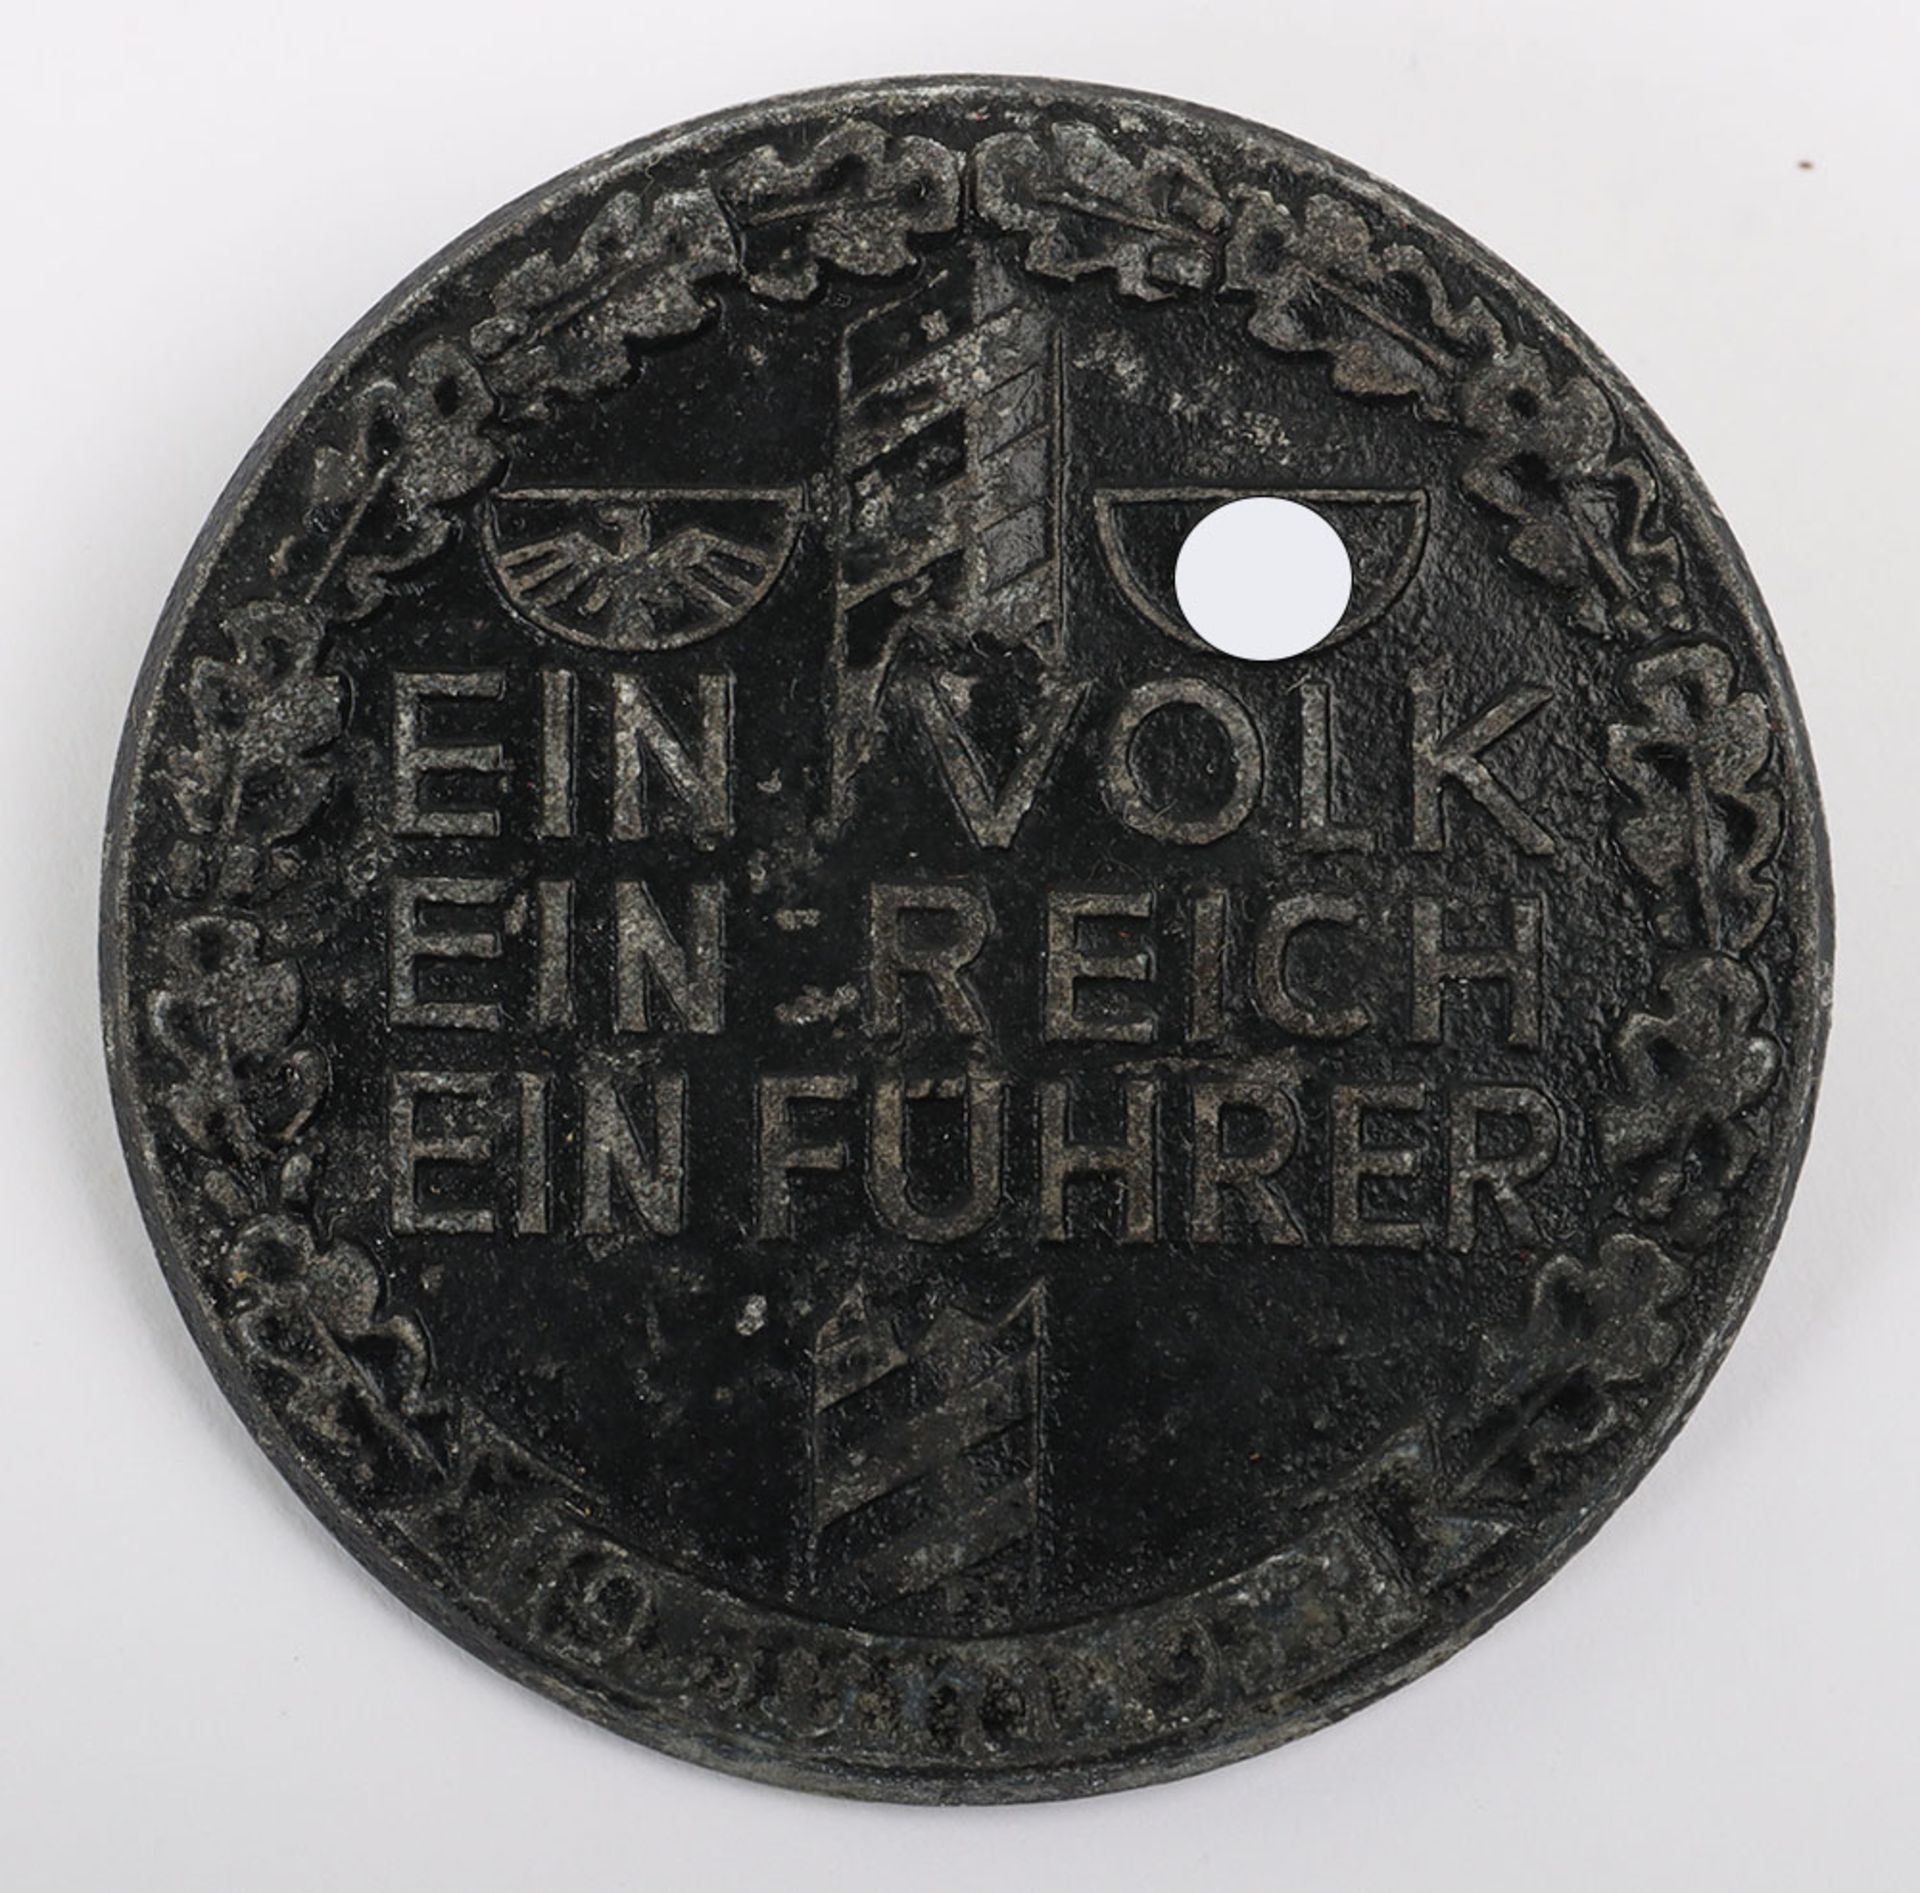 Third Reich ‘Ein Volk – Ein Reich – Ein Führer‘ Day Badge